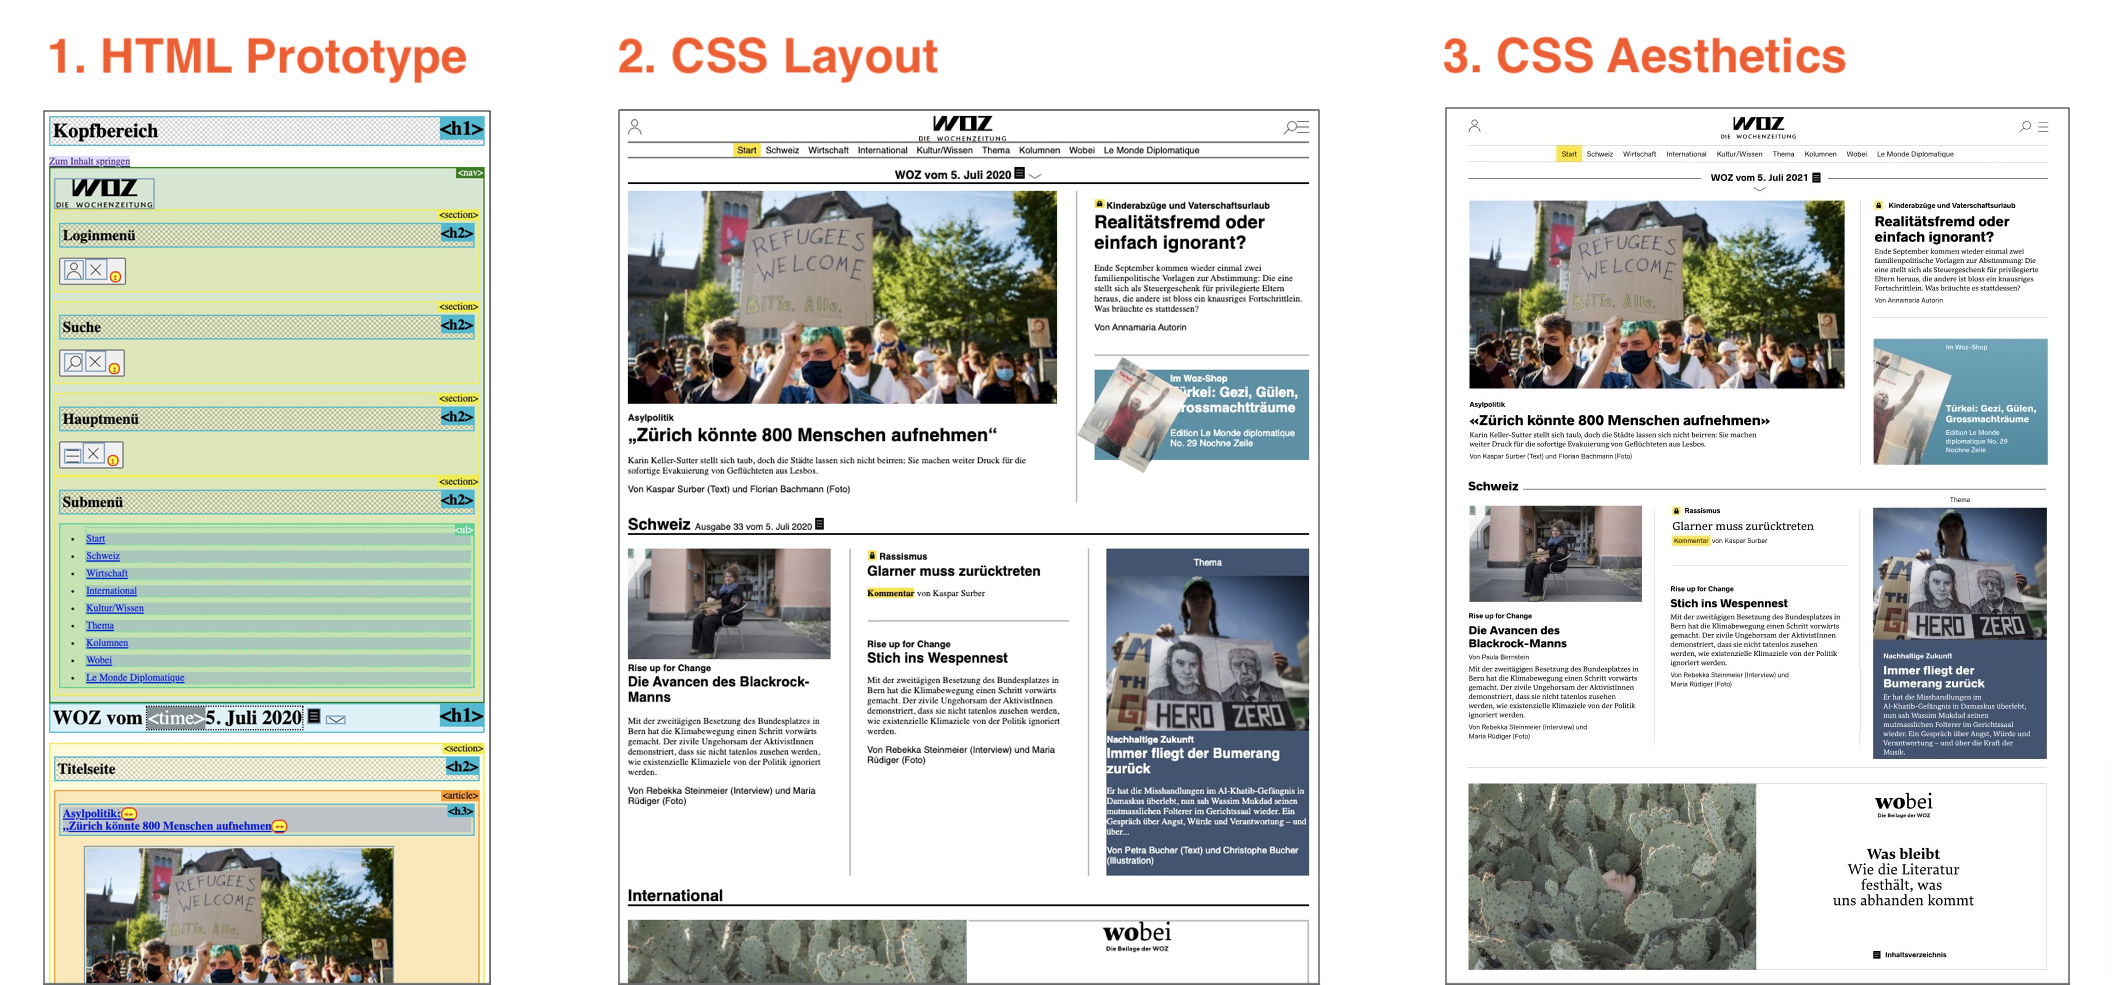 Une image représentant trois documents différents : le prototype HTML, le contenu avec la mise en page CSS, et le contenu après avoir ajouté l'esthétique CSS.